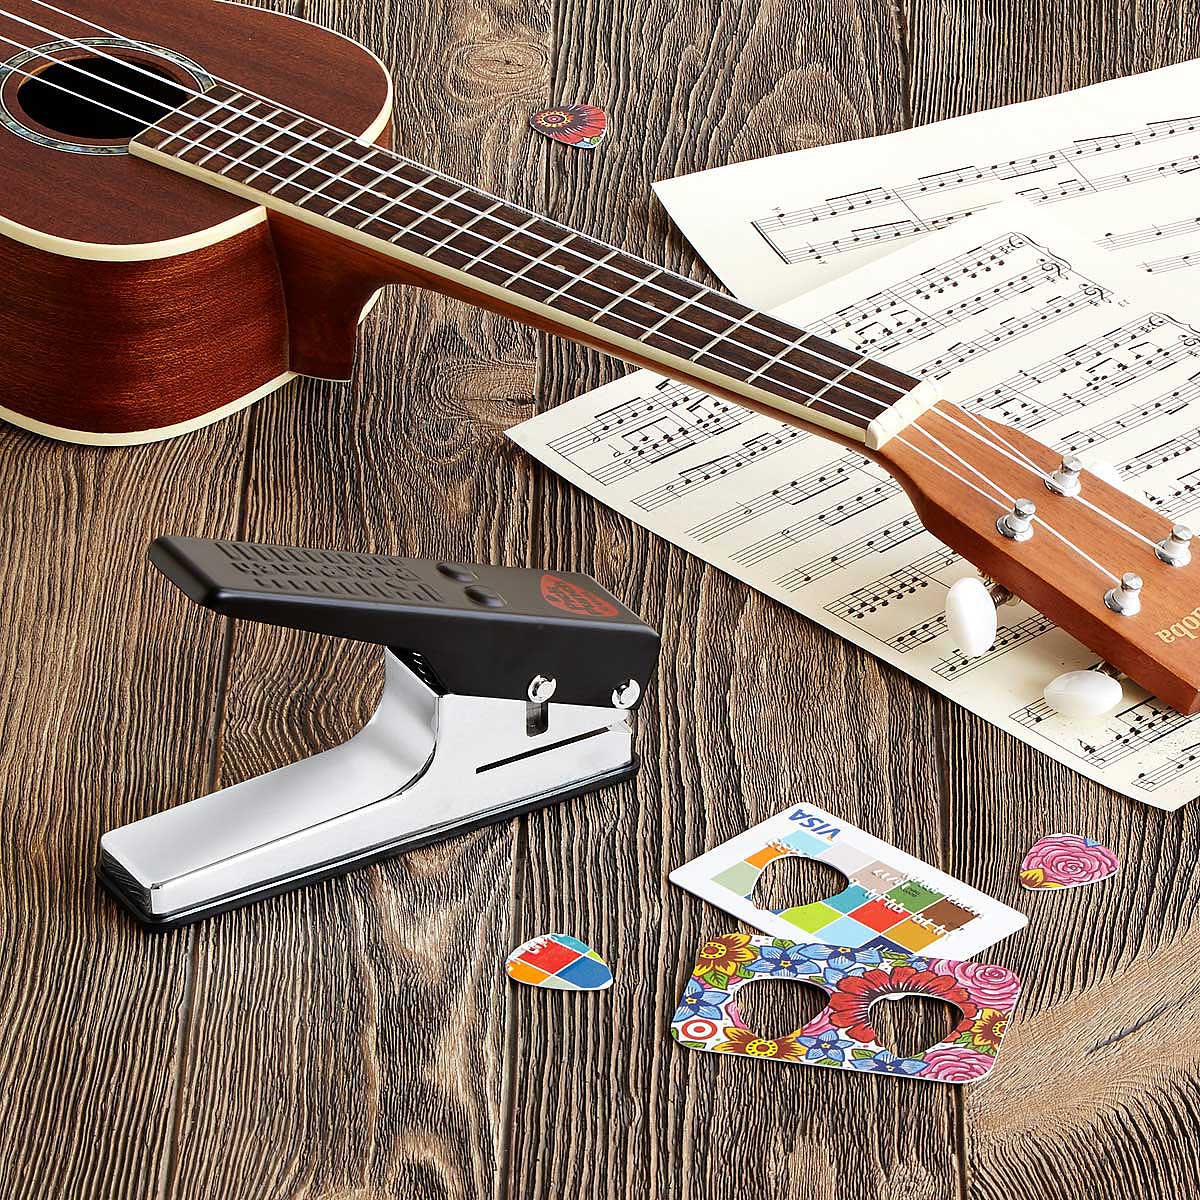 Guitar Pick Maker: $25 Lets you make guitar picks at home out of old credit cards, room keys, etc.